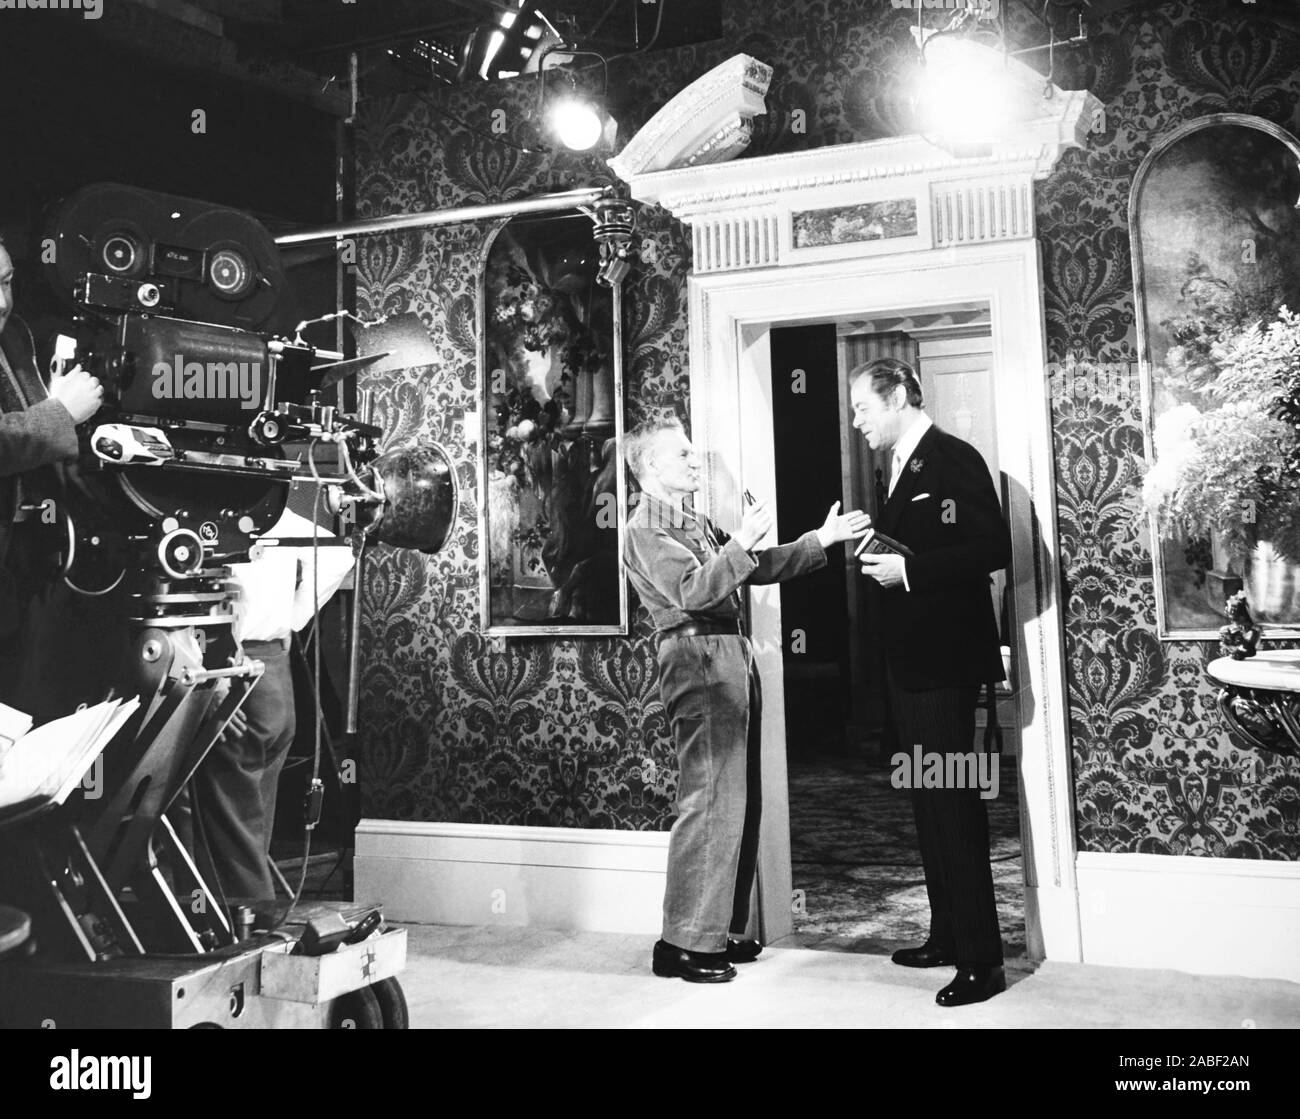 El Amarillo ROLLS-ROYCE, de izquierda a derecha: director Anthony Asquith, Rex Harrison en conjunto, 1964 Foto de stock